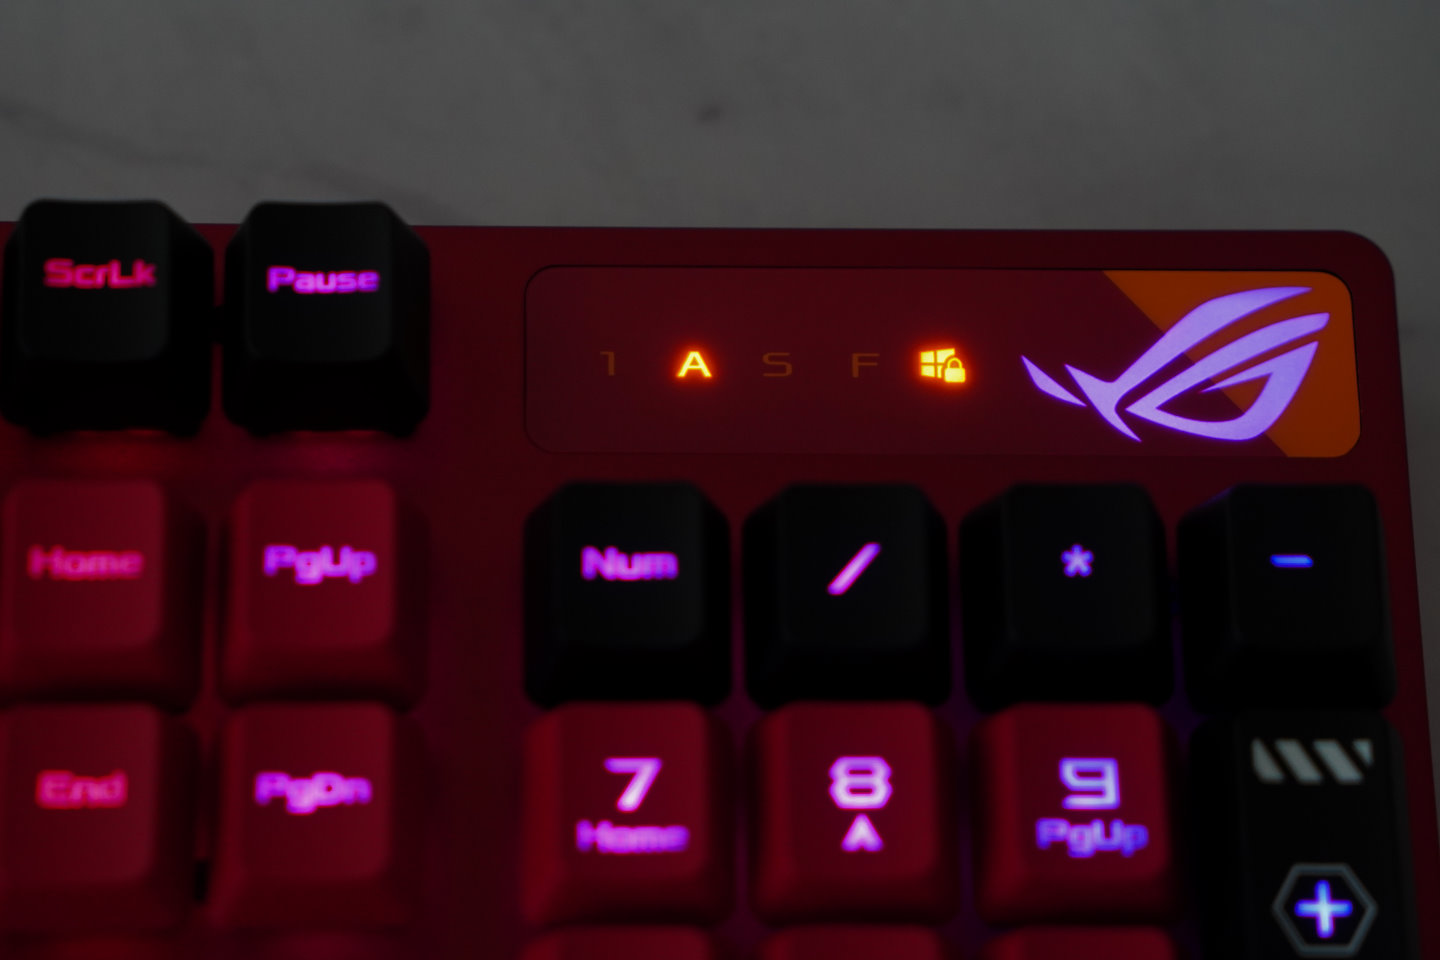 鍵盤右上角有Num Lock、Caps Lock、Scr Lock、Fn Lock指示燈號，以及ROG之眼標誌。